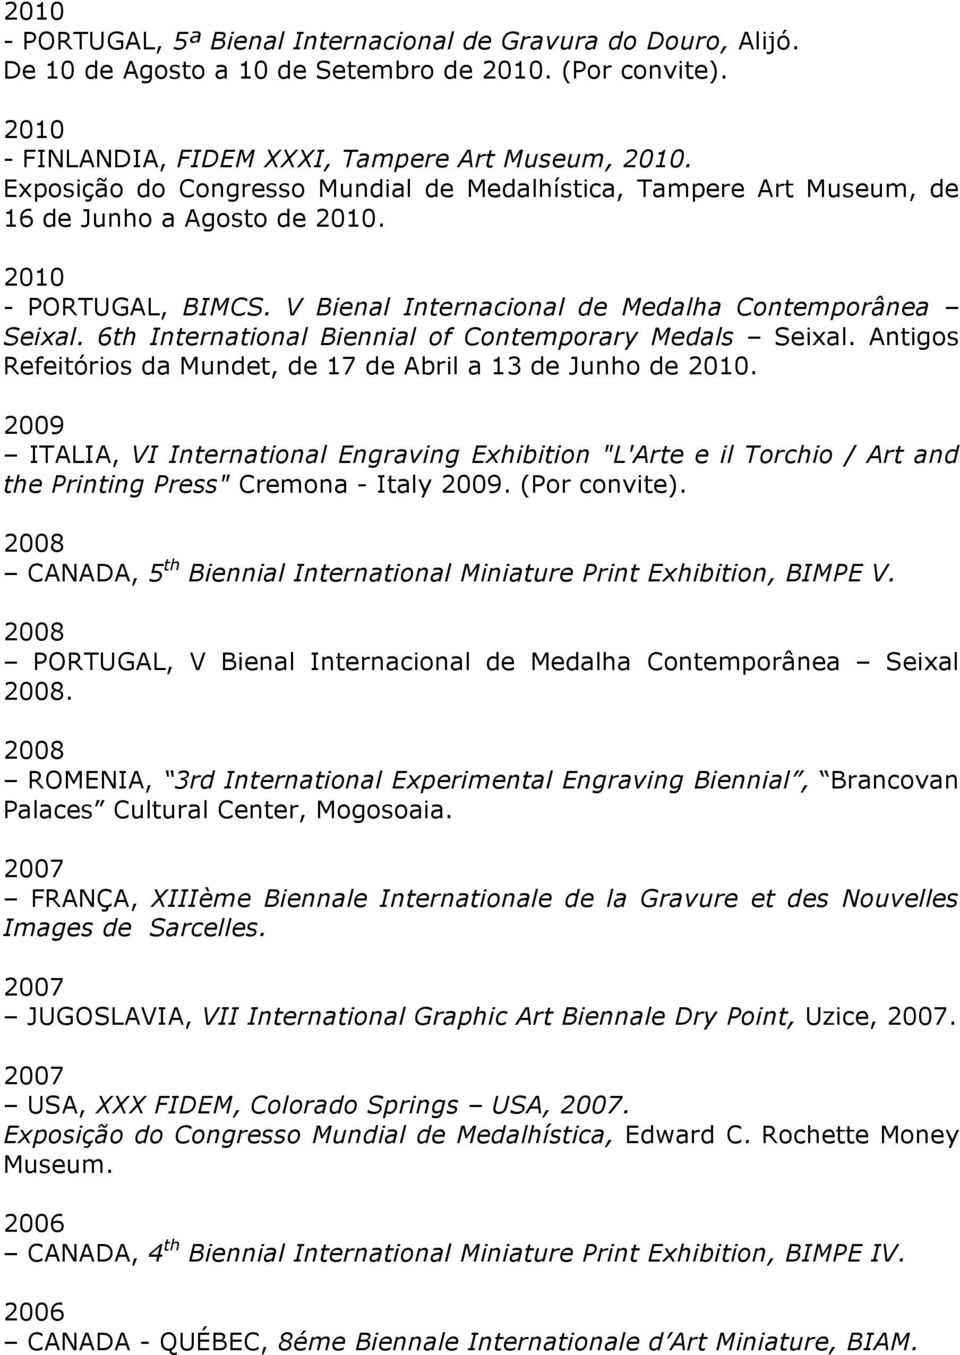 6th International Biennial of Contemporary Medals Seixal. Antigos Refeitórios da Mundet, de 17 de Abril a 13 de Junho de 2010.